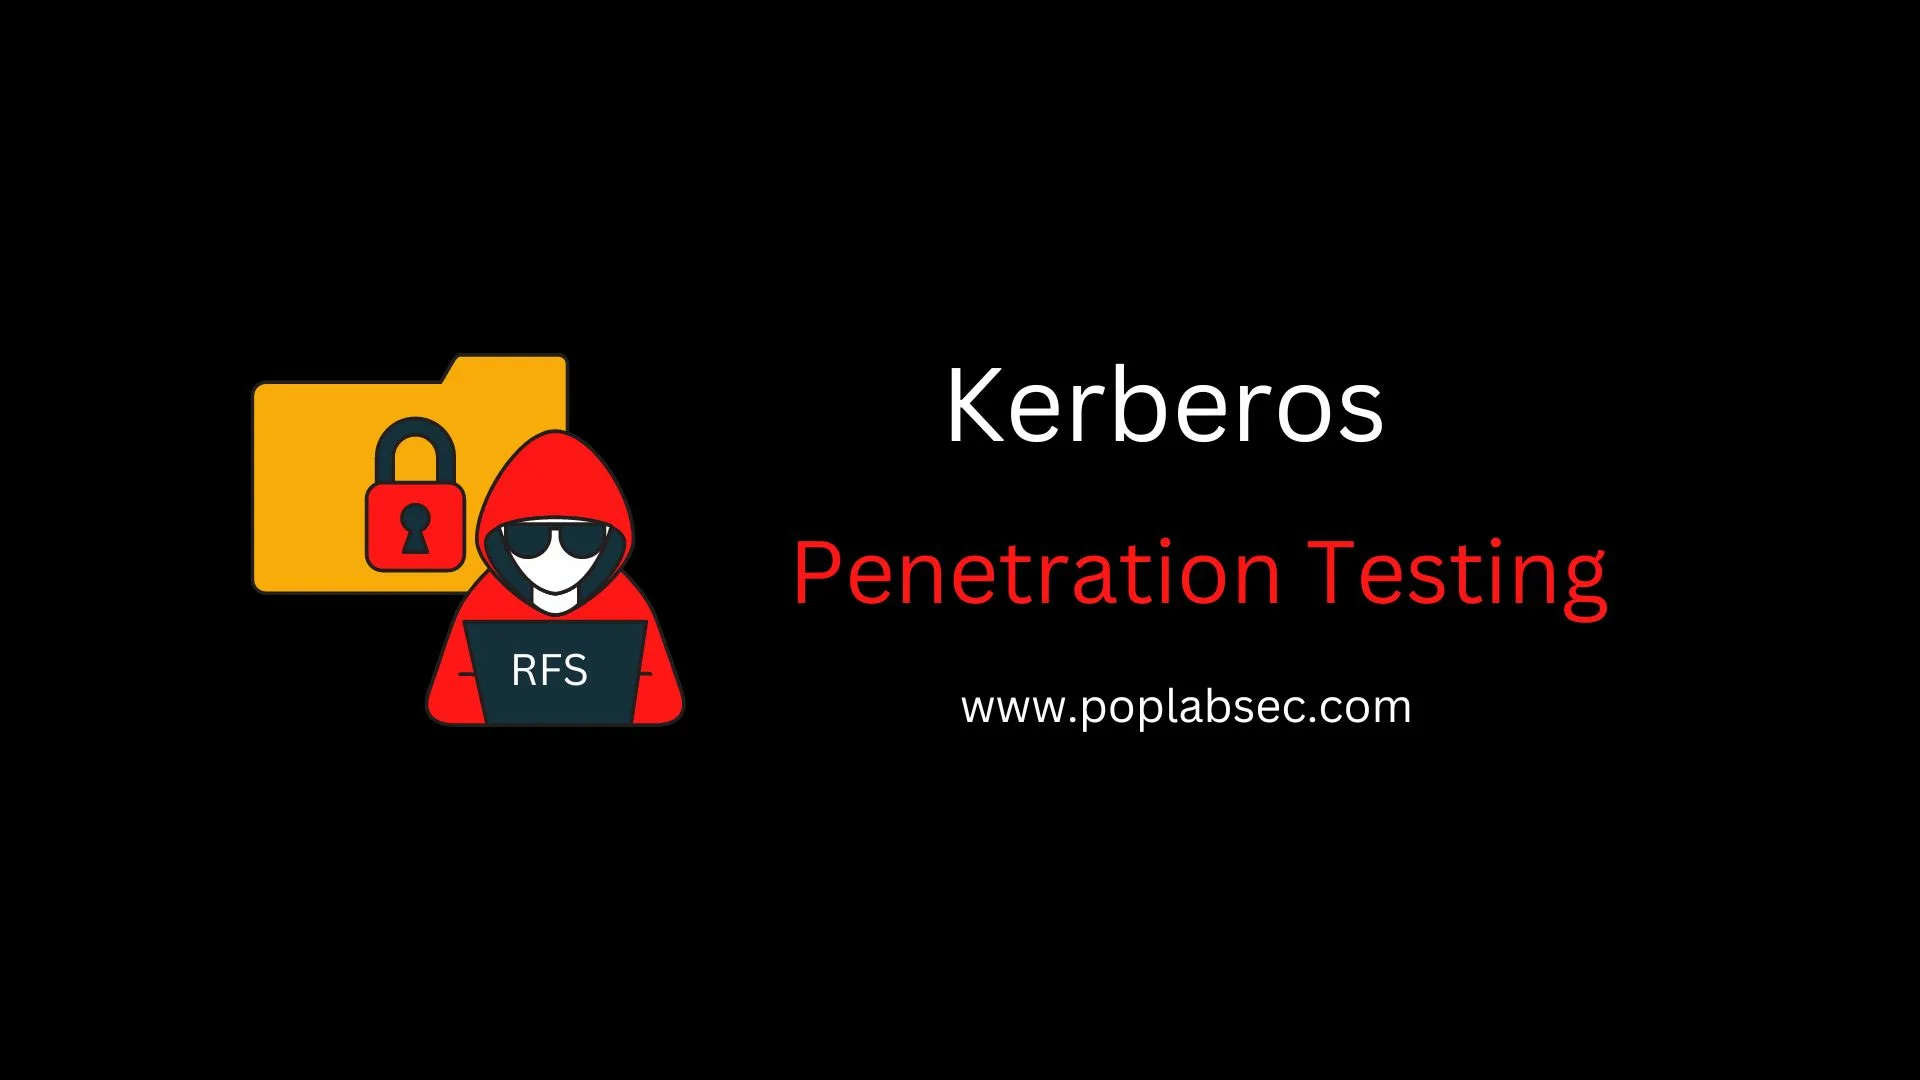 Kerberos Penetration Testing